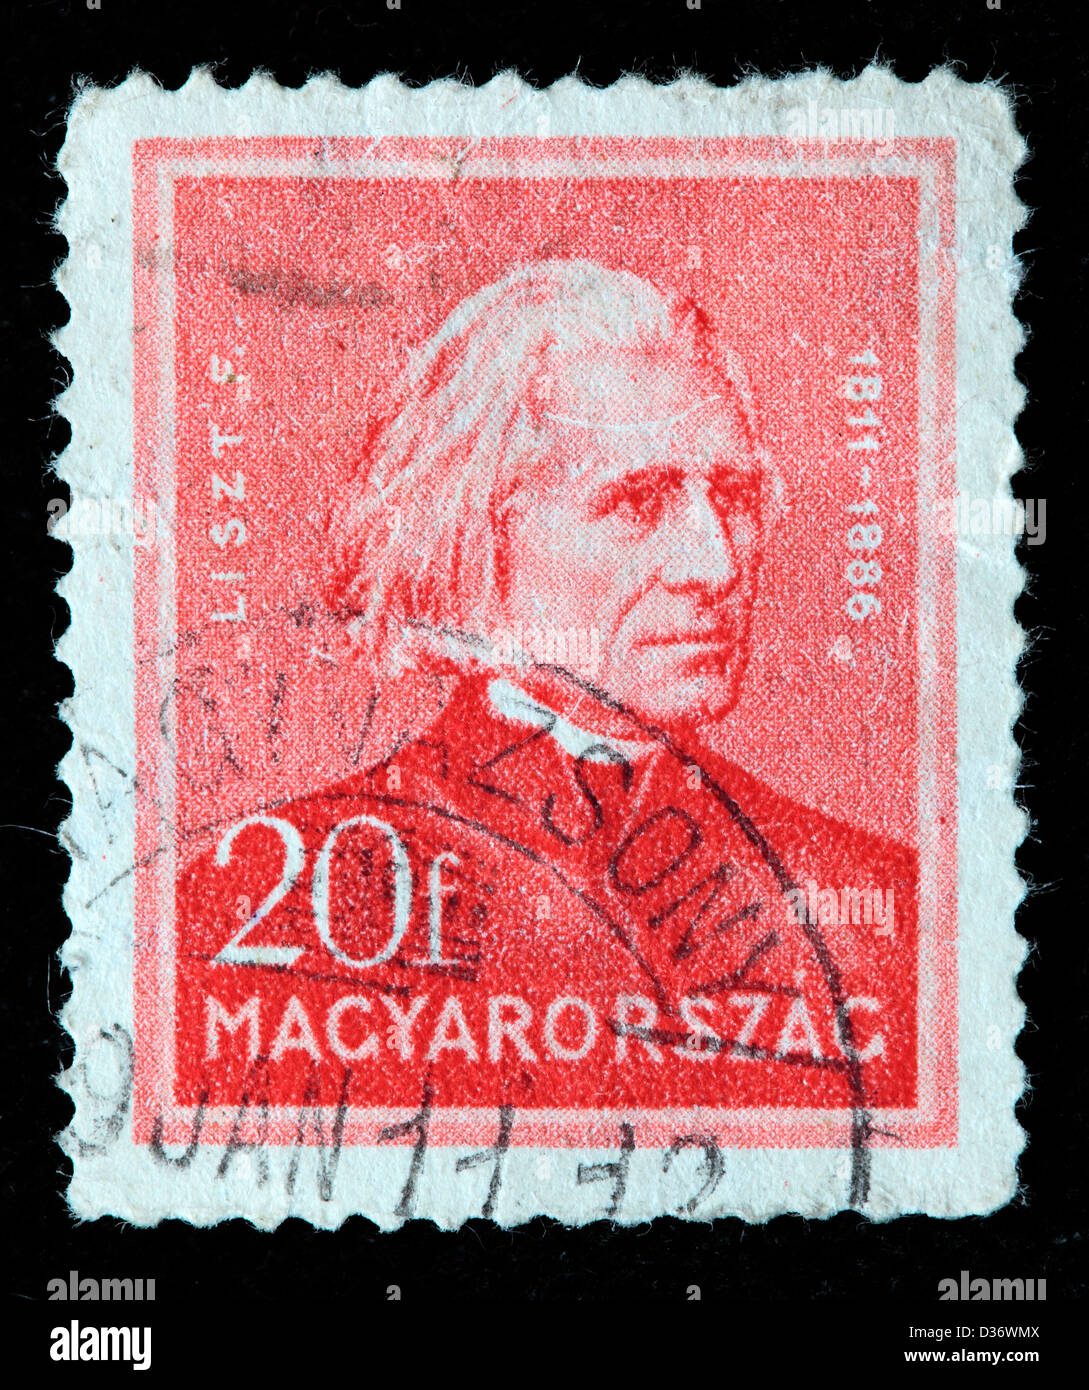 Franz Liszt, compositeur, timbre-poste, Hongrie, 1932 Banque D'Images